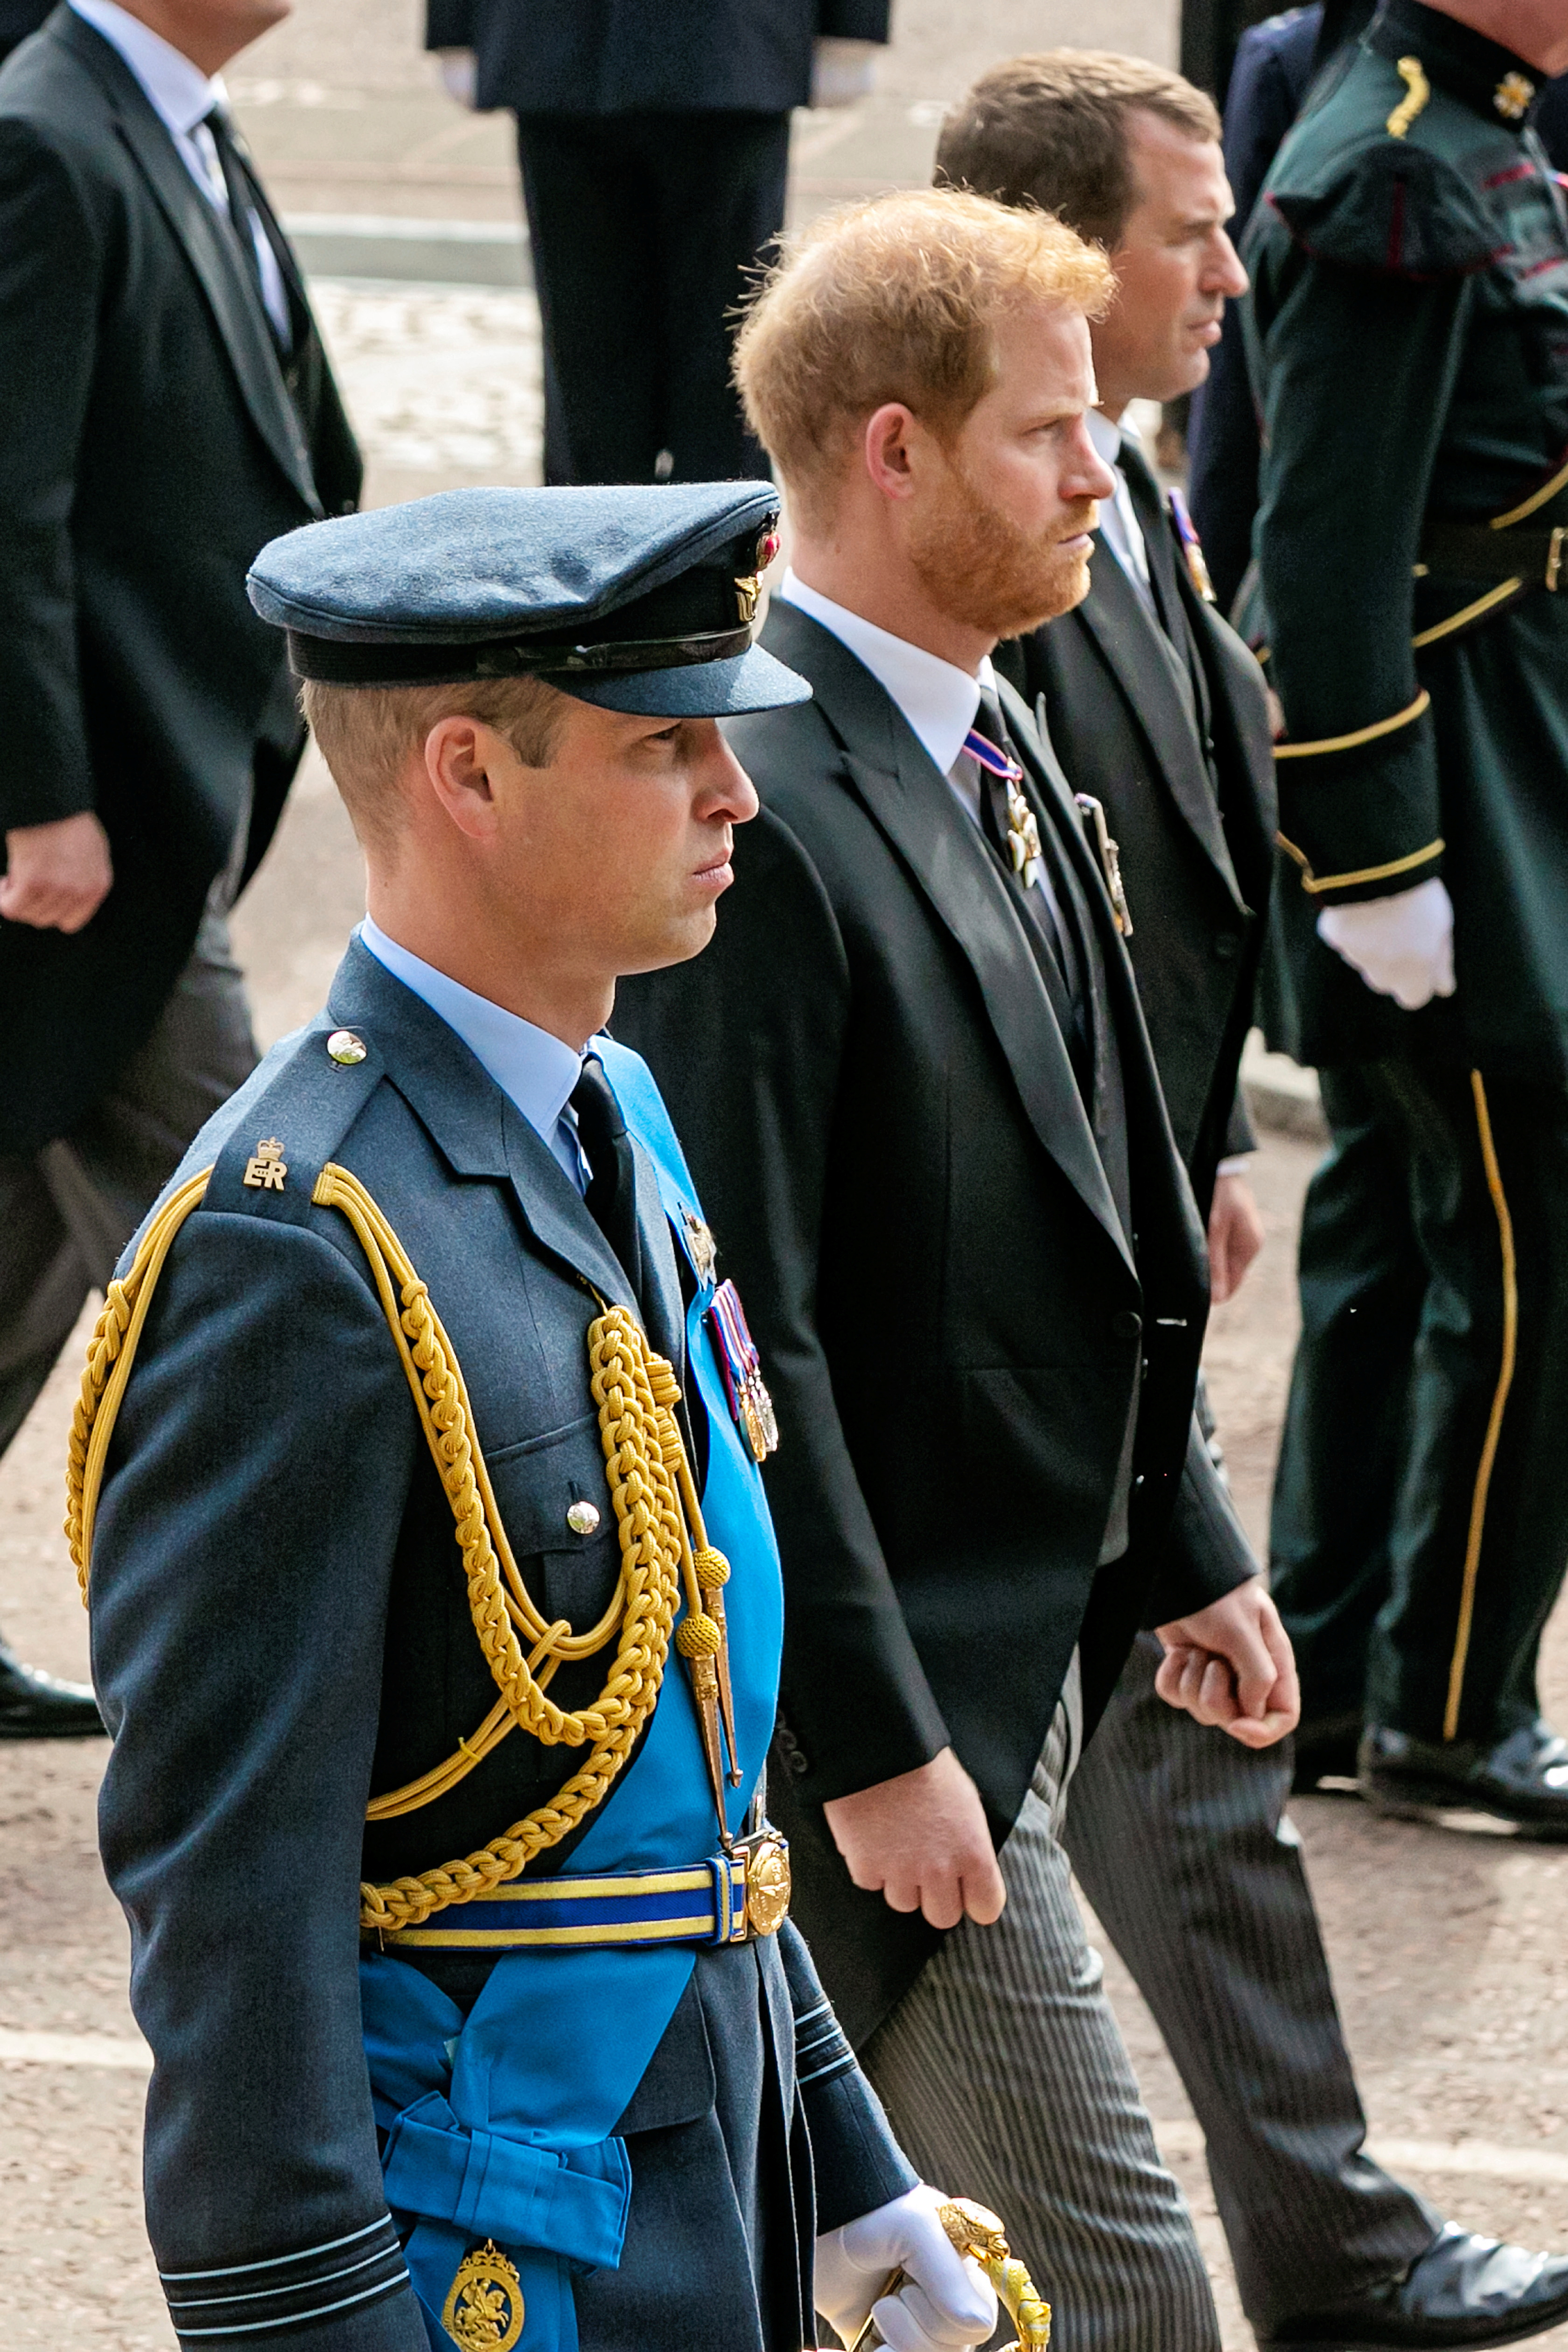 El príncipe de Gales pasó siete años en el ejército, incluyendo más de tres años como piloto de búsqueda y rescate (REUTERS)